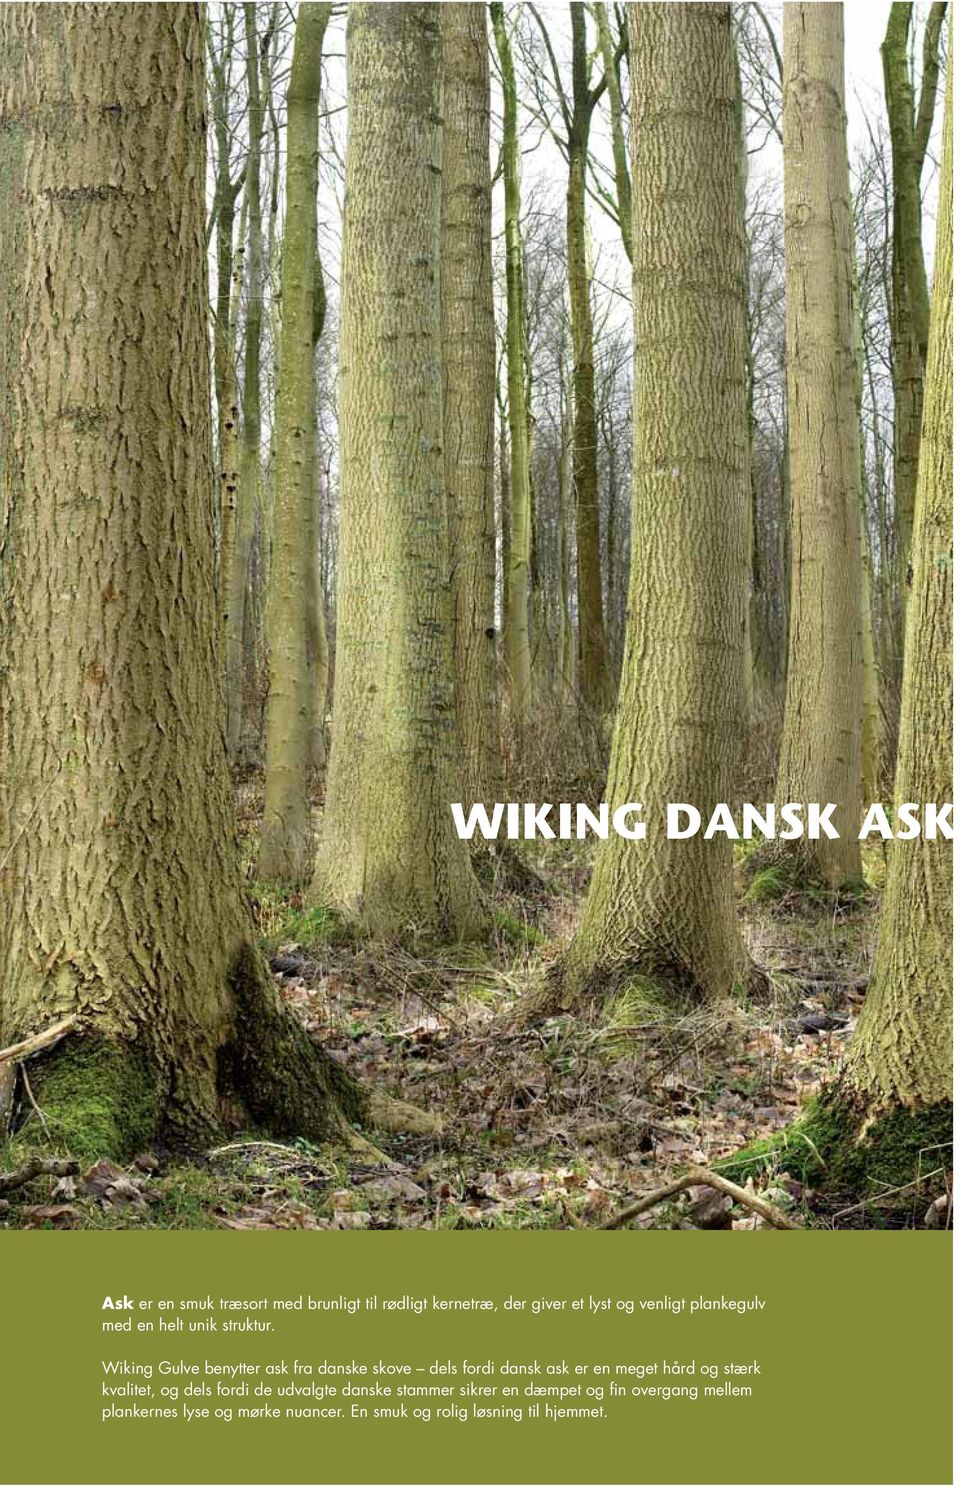 Wiking Gulve benytter ask fra danske skove dels fordi dansk ask er en meget hård og stærk